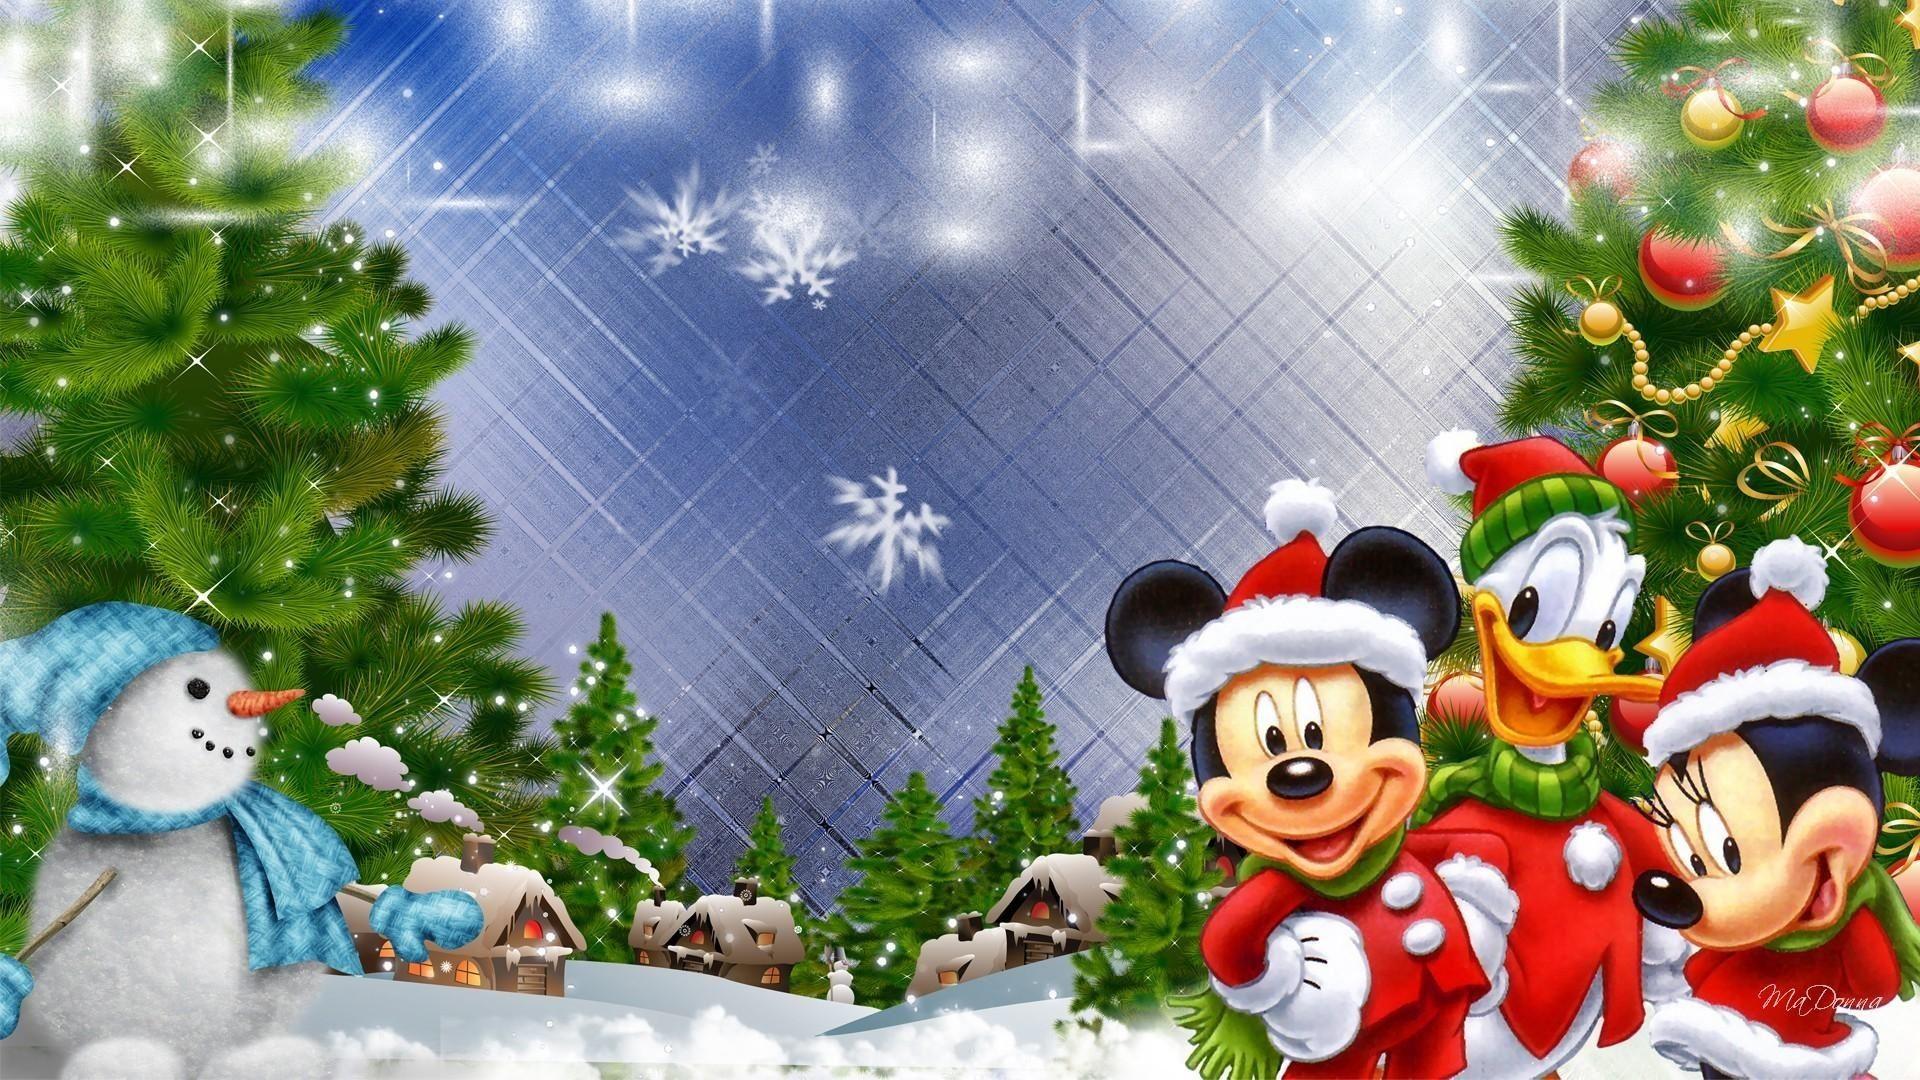 Tổng hợp 300 Mickey mouse background Christmas đáng yêu và độc đáo